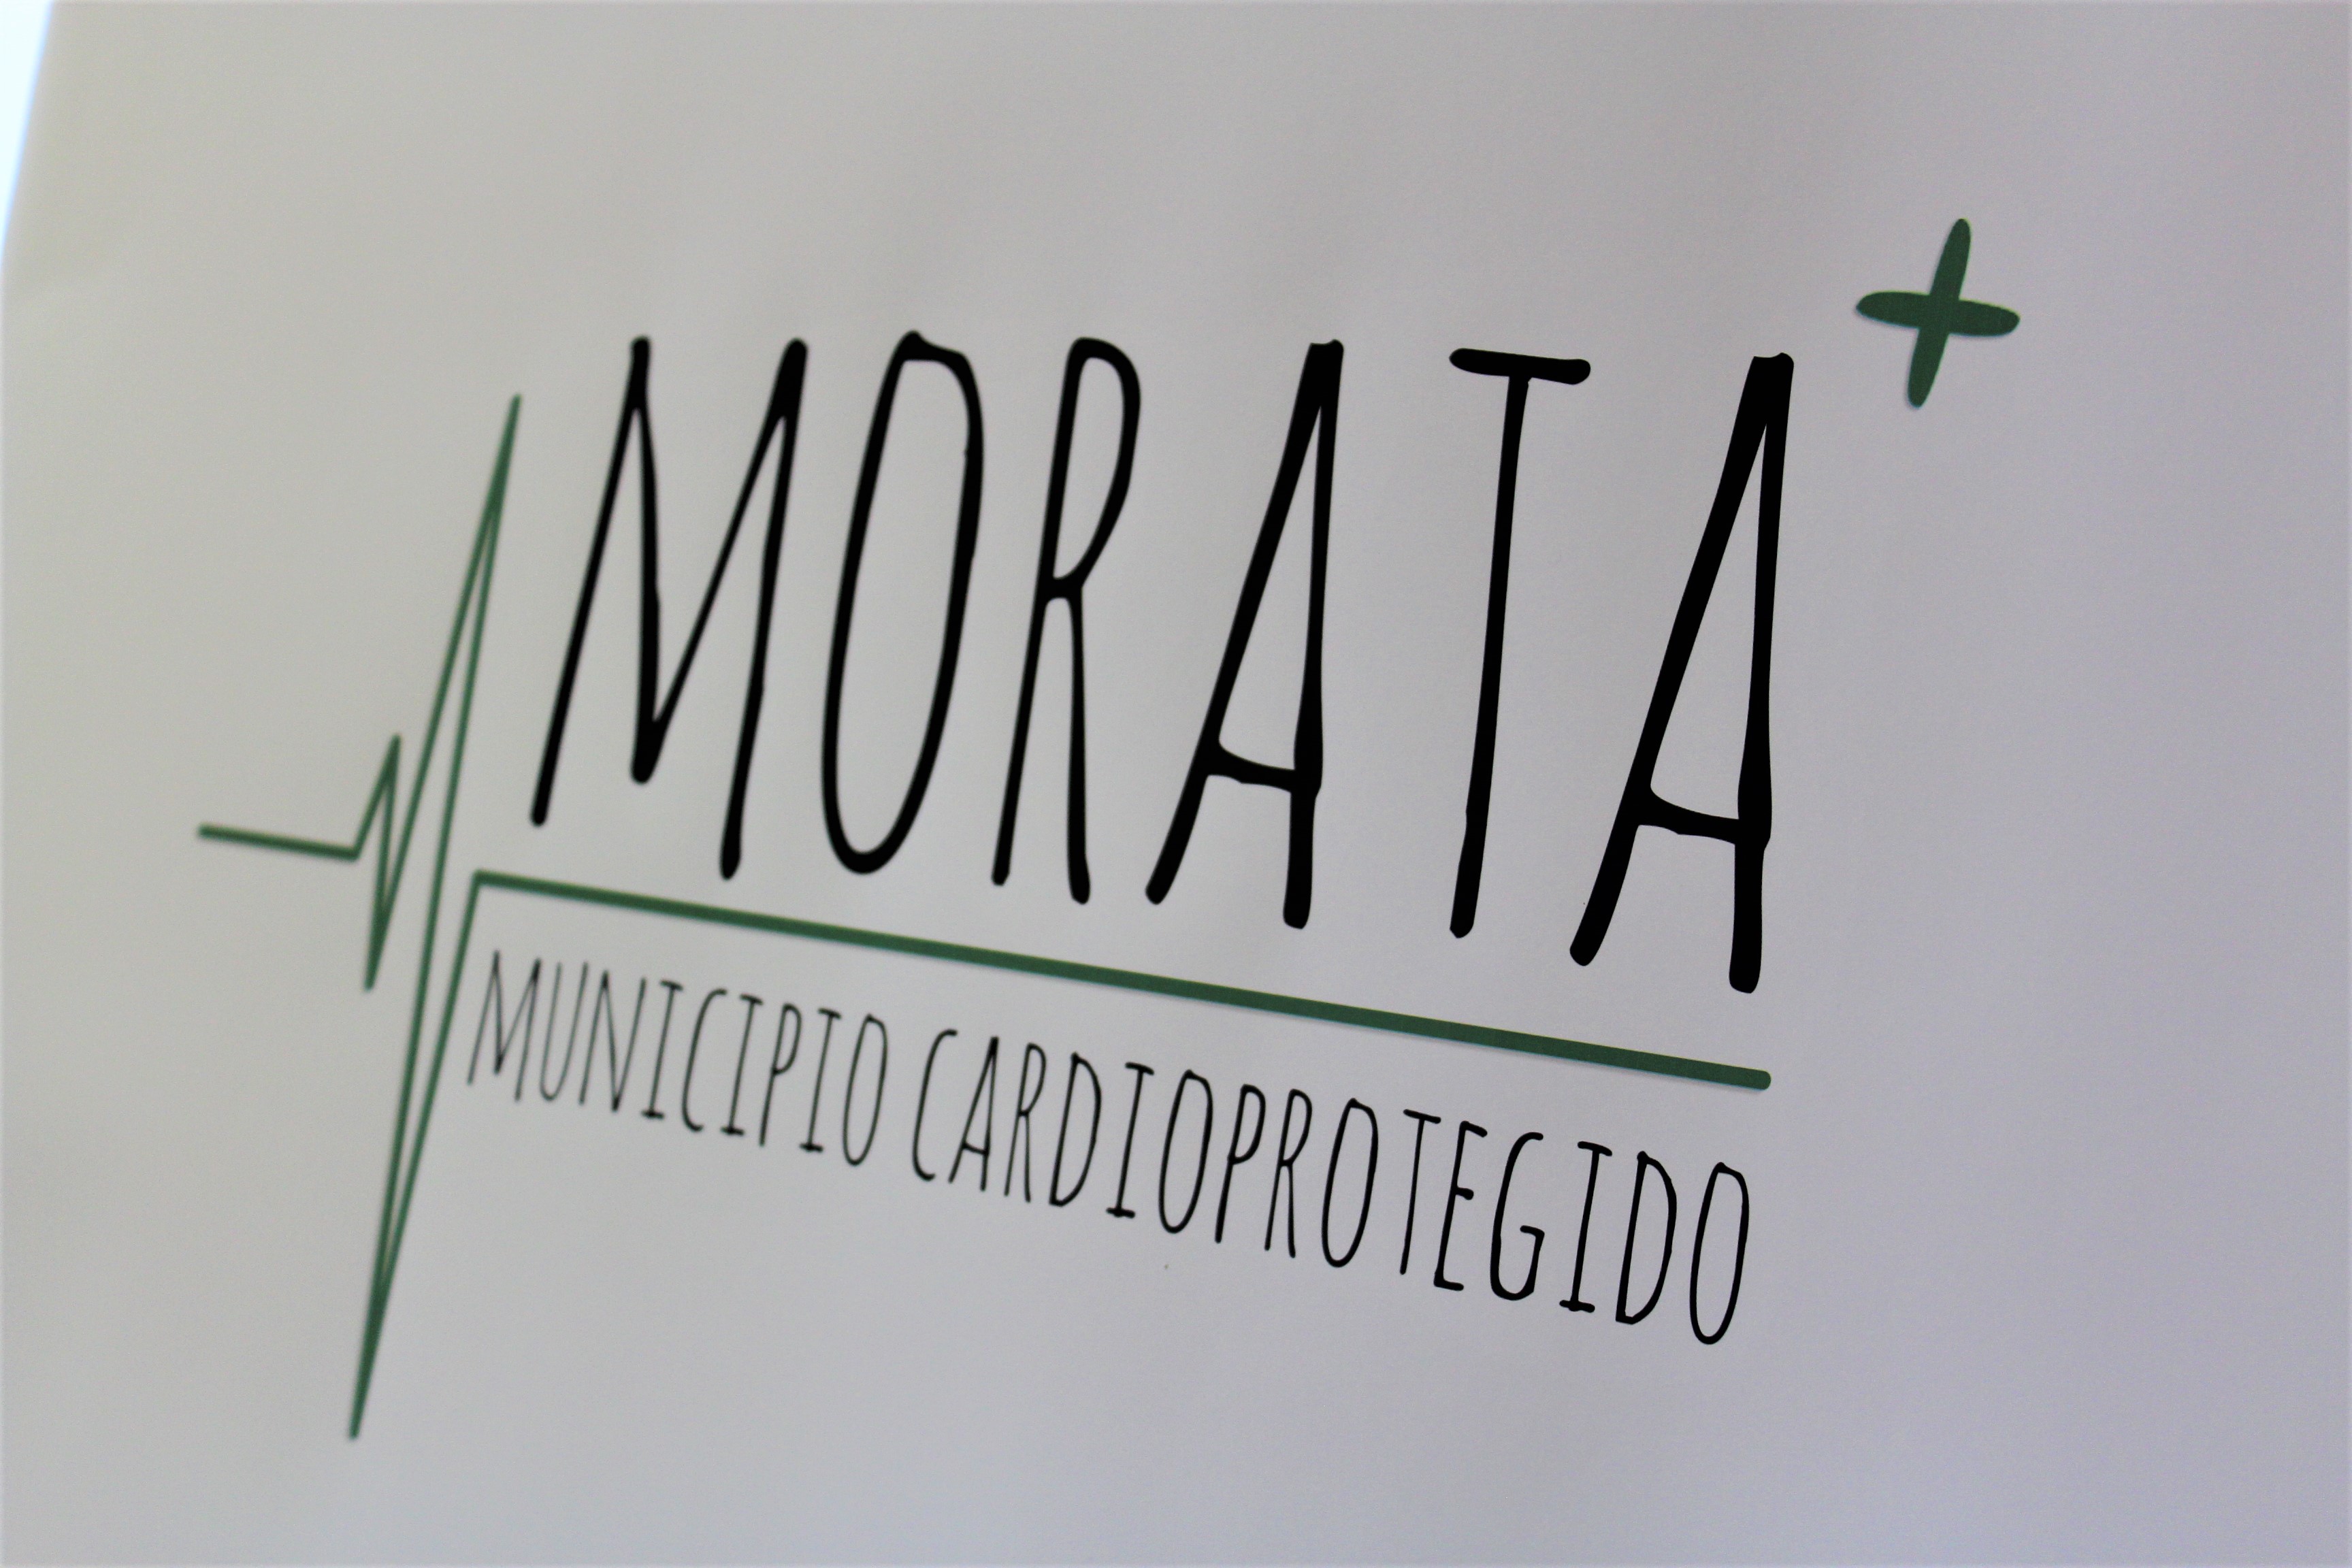 Morata, municipio cardioprotegido